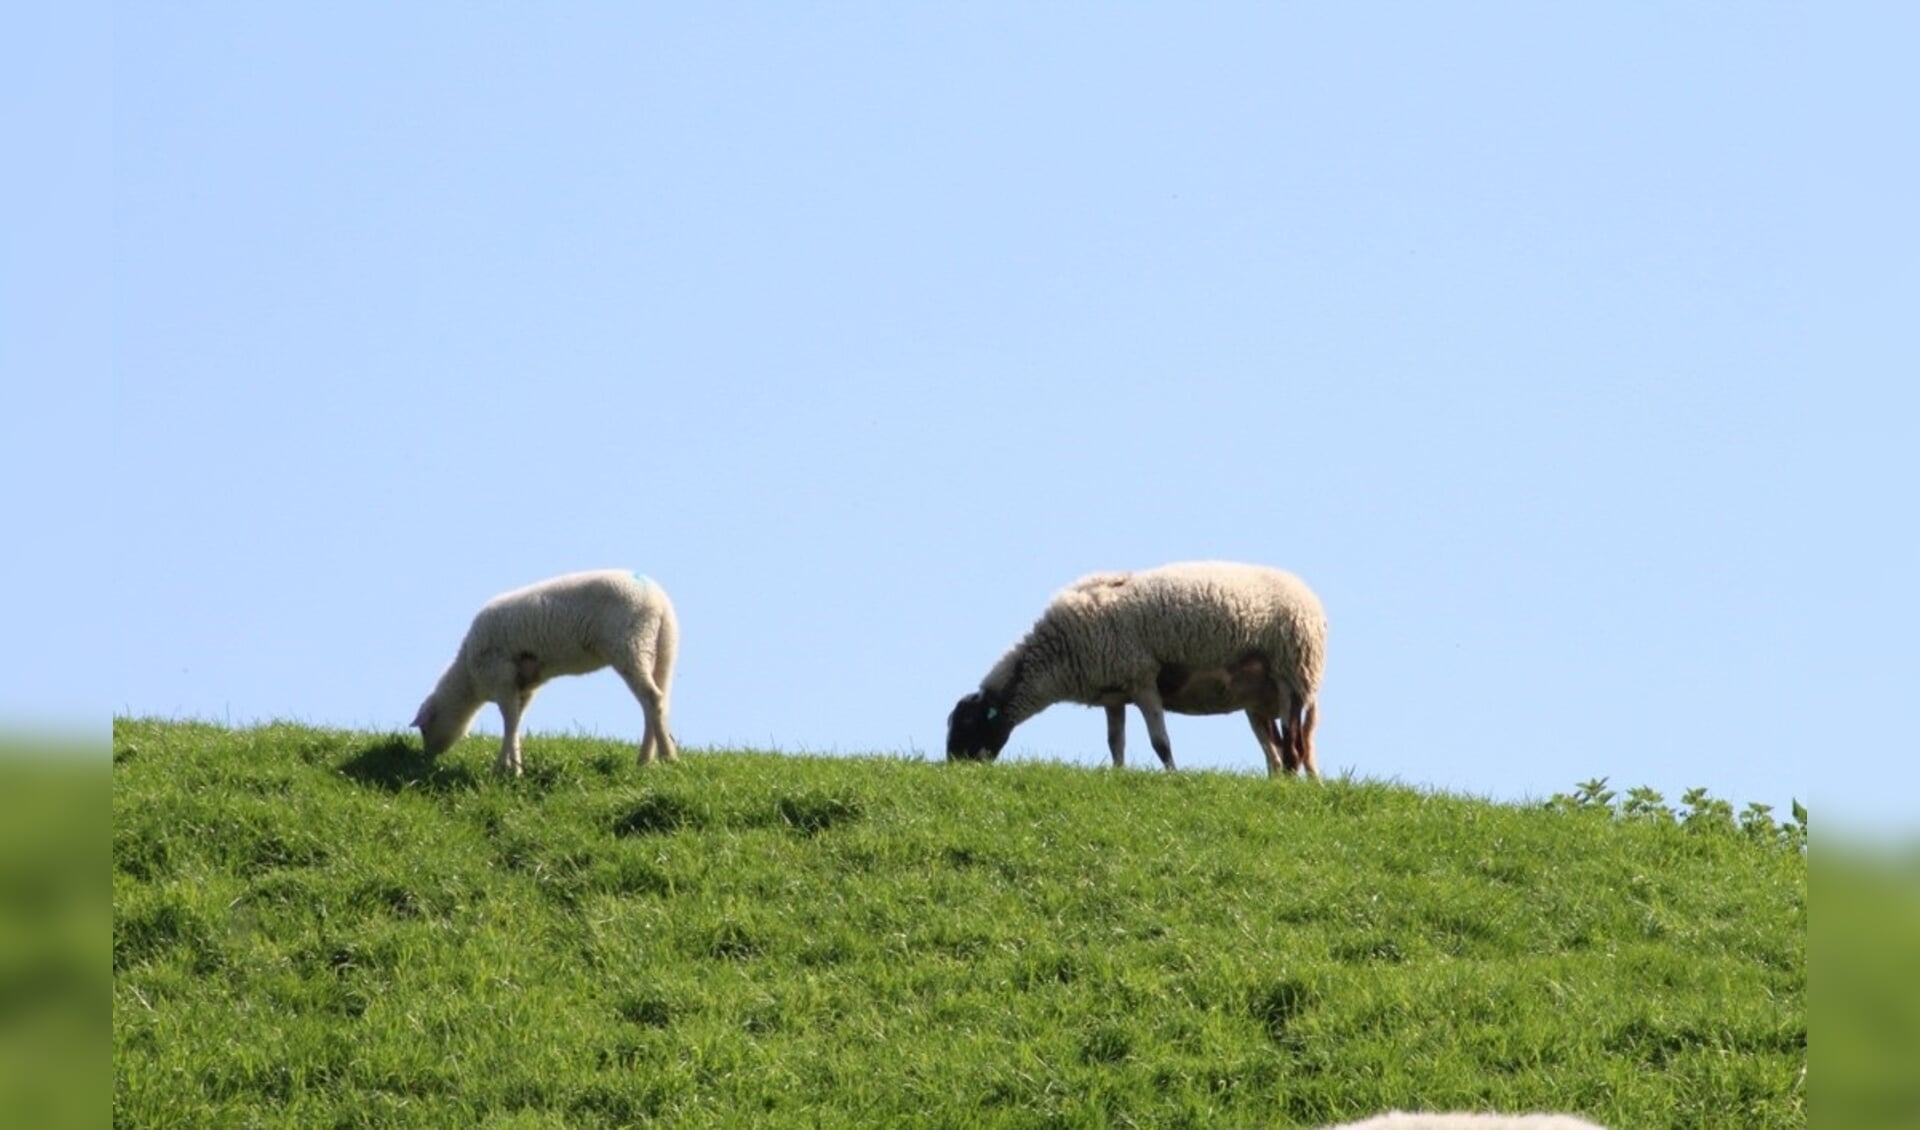 Deze schapen mogen de komende maanden niet de Lekdijk op. Ander vee overigens ook niet.